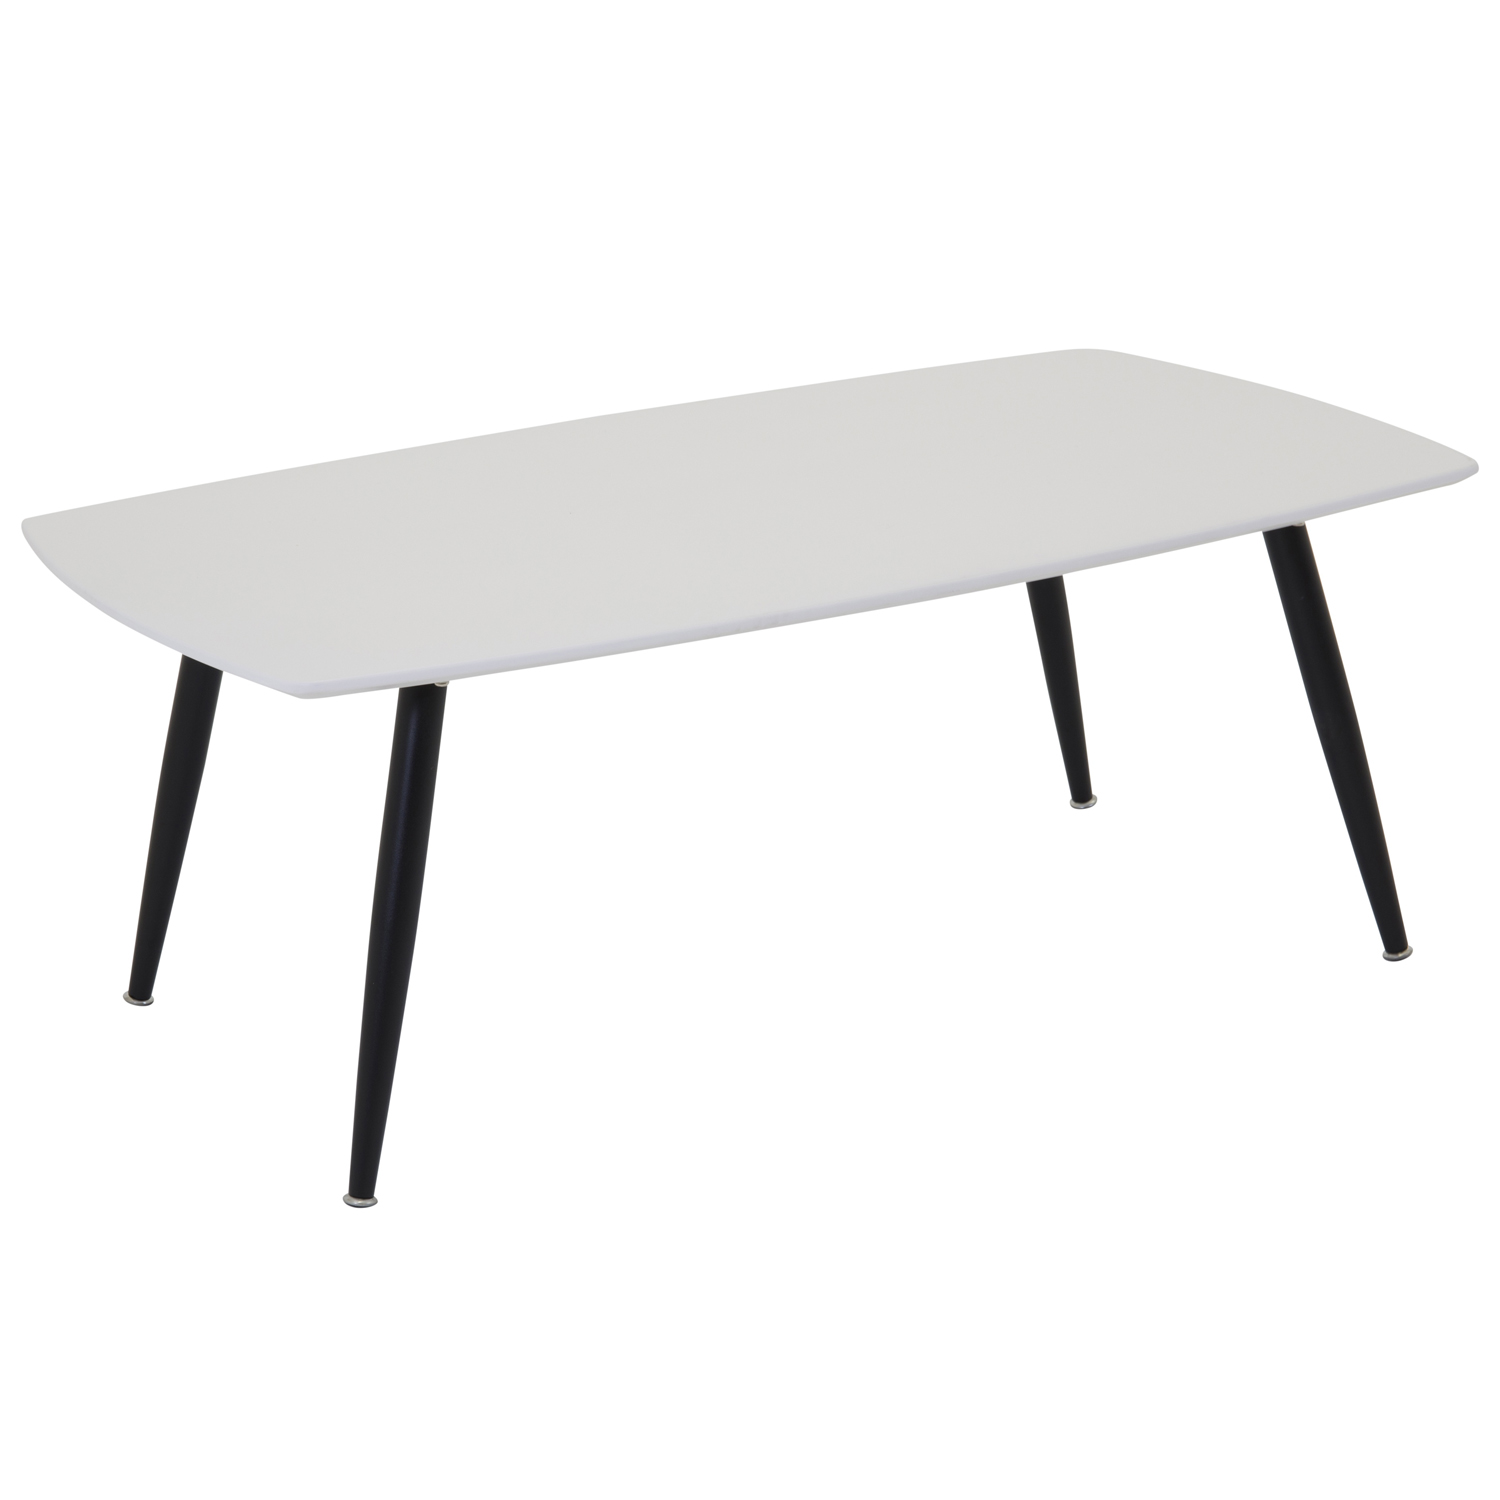 VENTURE DESIGN Plaza sofabord - hvid MDF og sort metal (120x70)